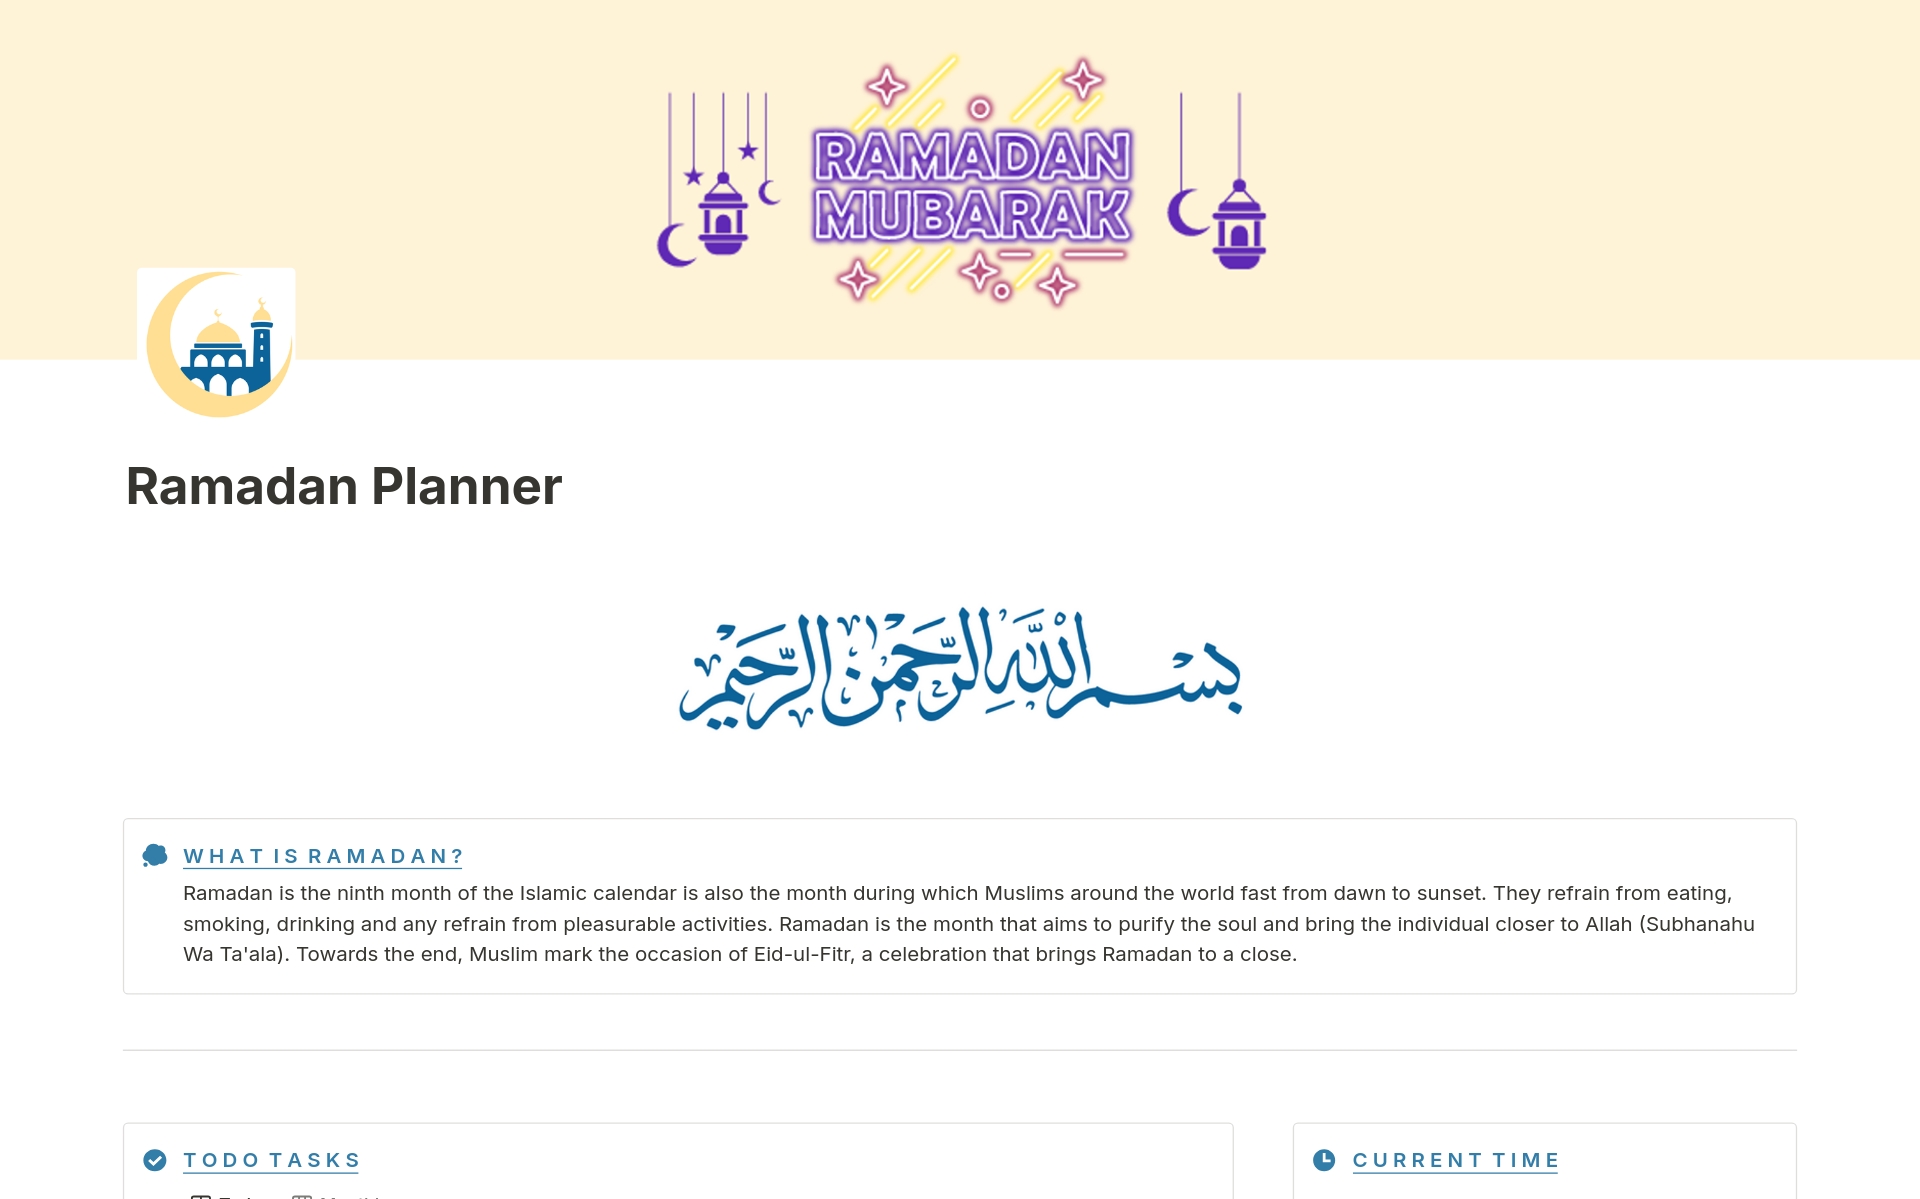 Vista previa de una plantilla para Ramadan Planner